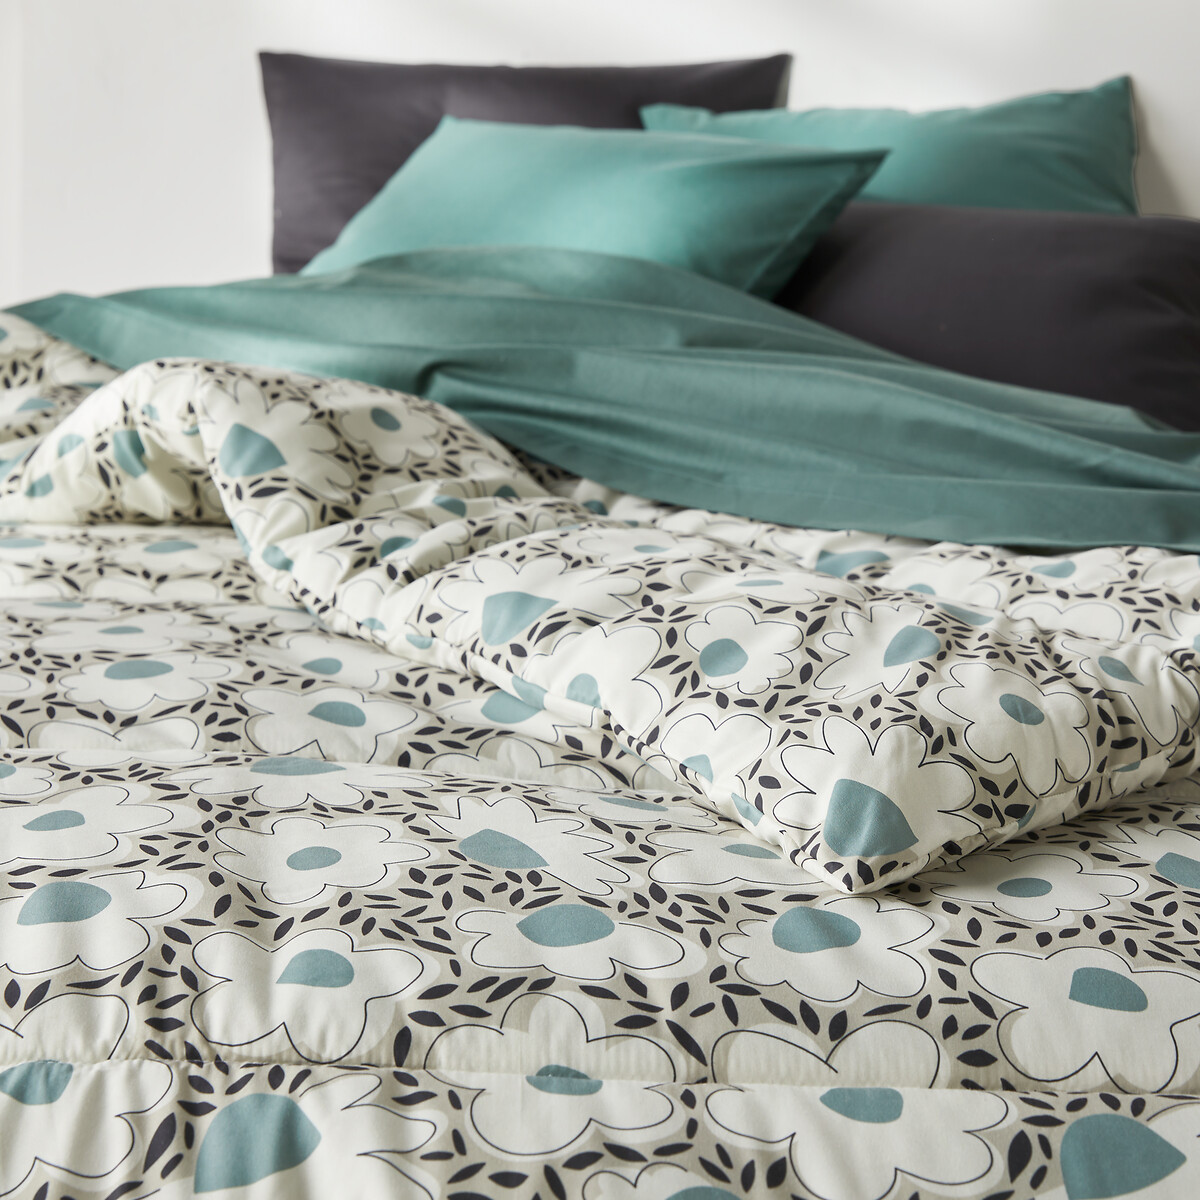 Одеяло С принтом из микрофибры Orella 140 x 200 см зеленый LaRedoute, размер 140 x 200 см - фото 2